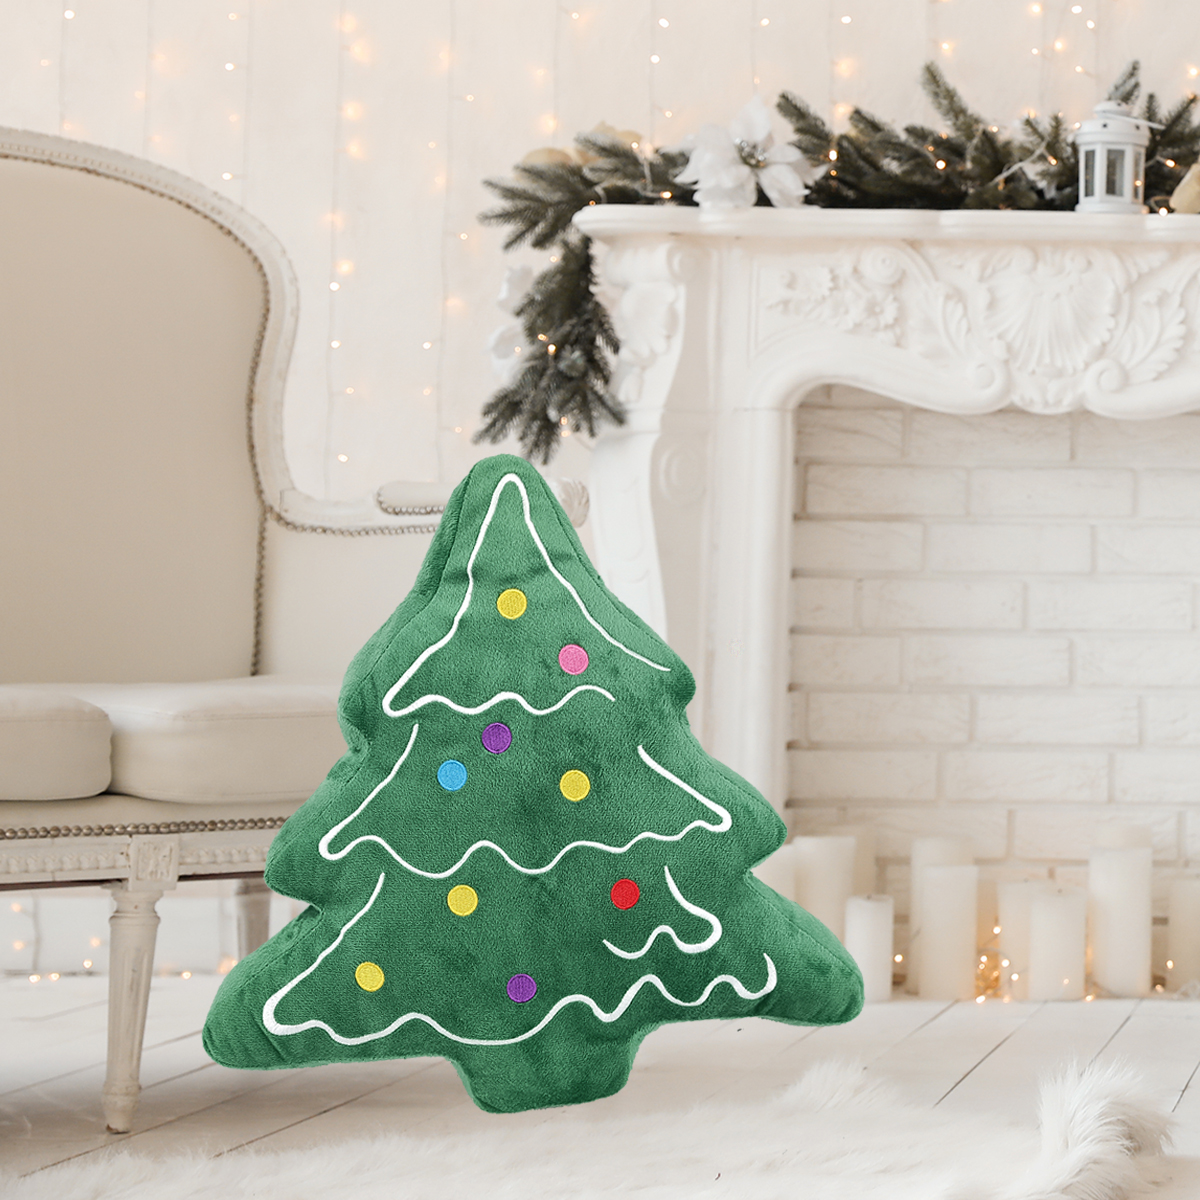 Christmas Tree Stuffed Throw Pillow For Home Decor